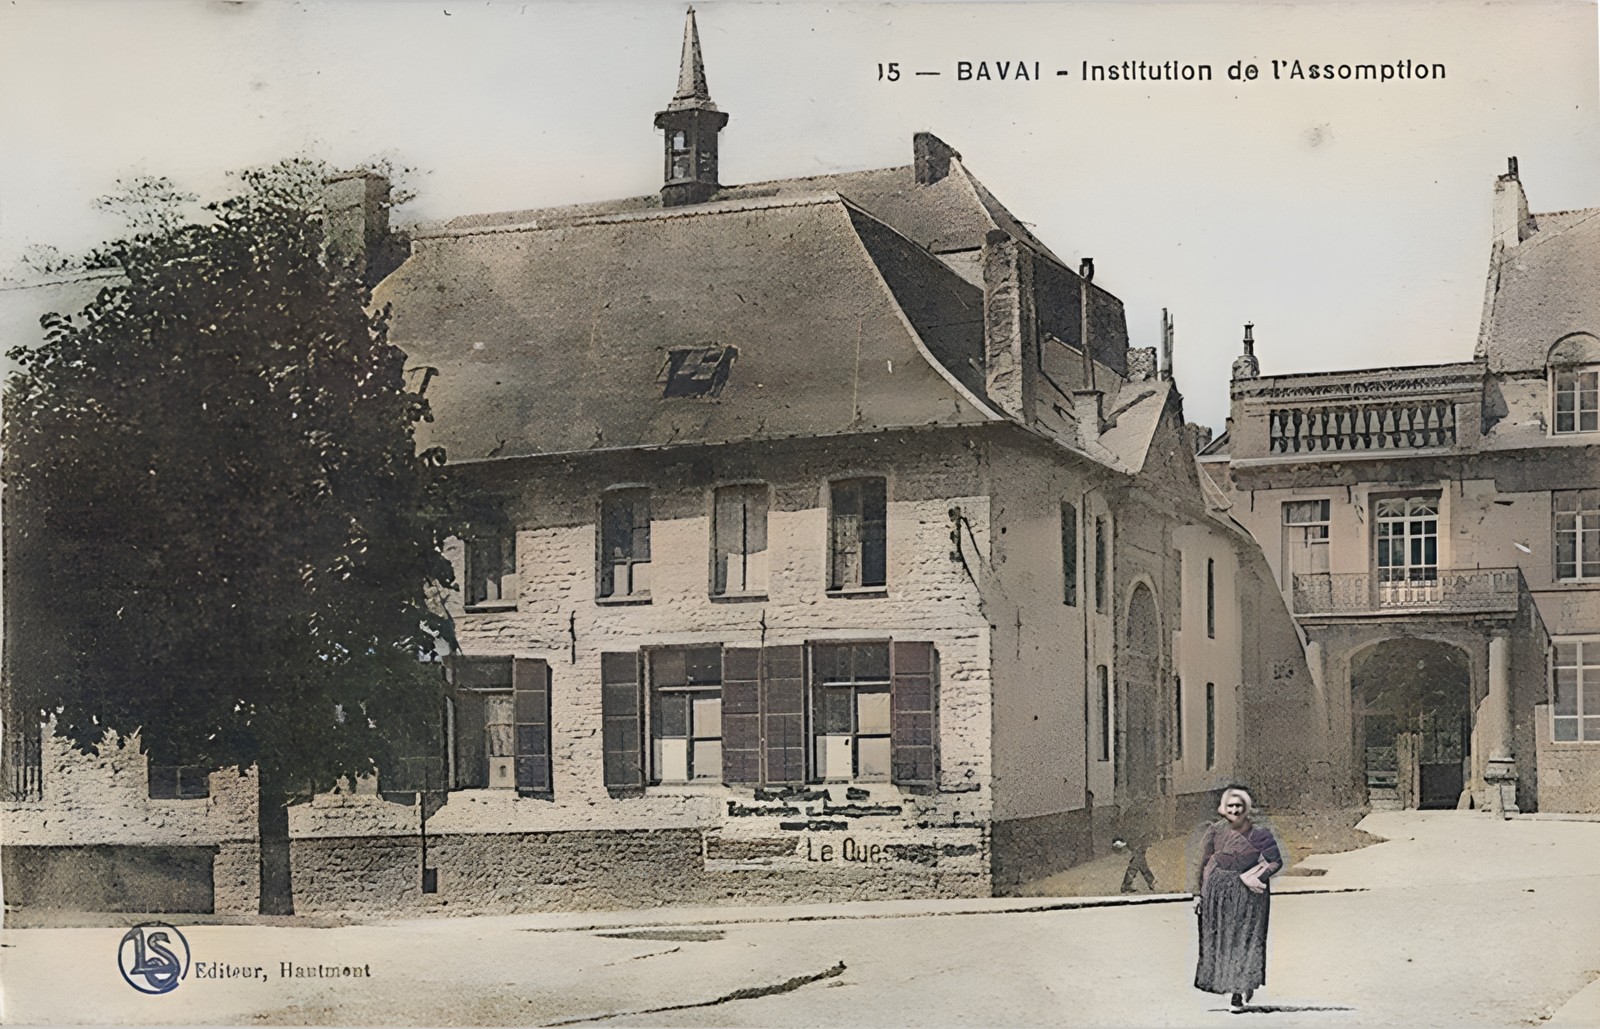 Le collège de l'assomption à Bavay